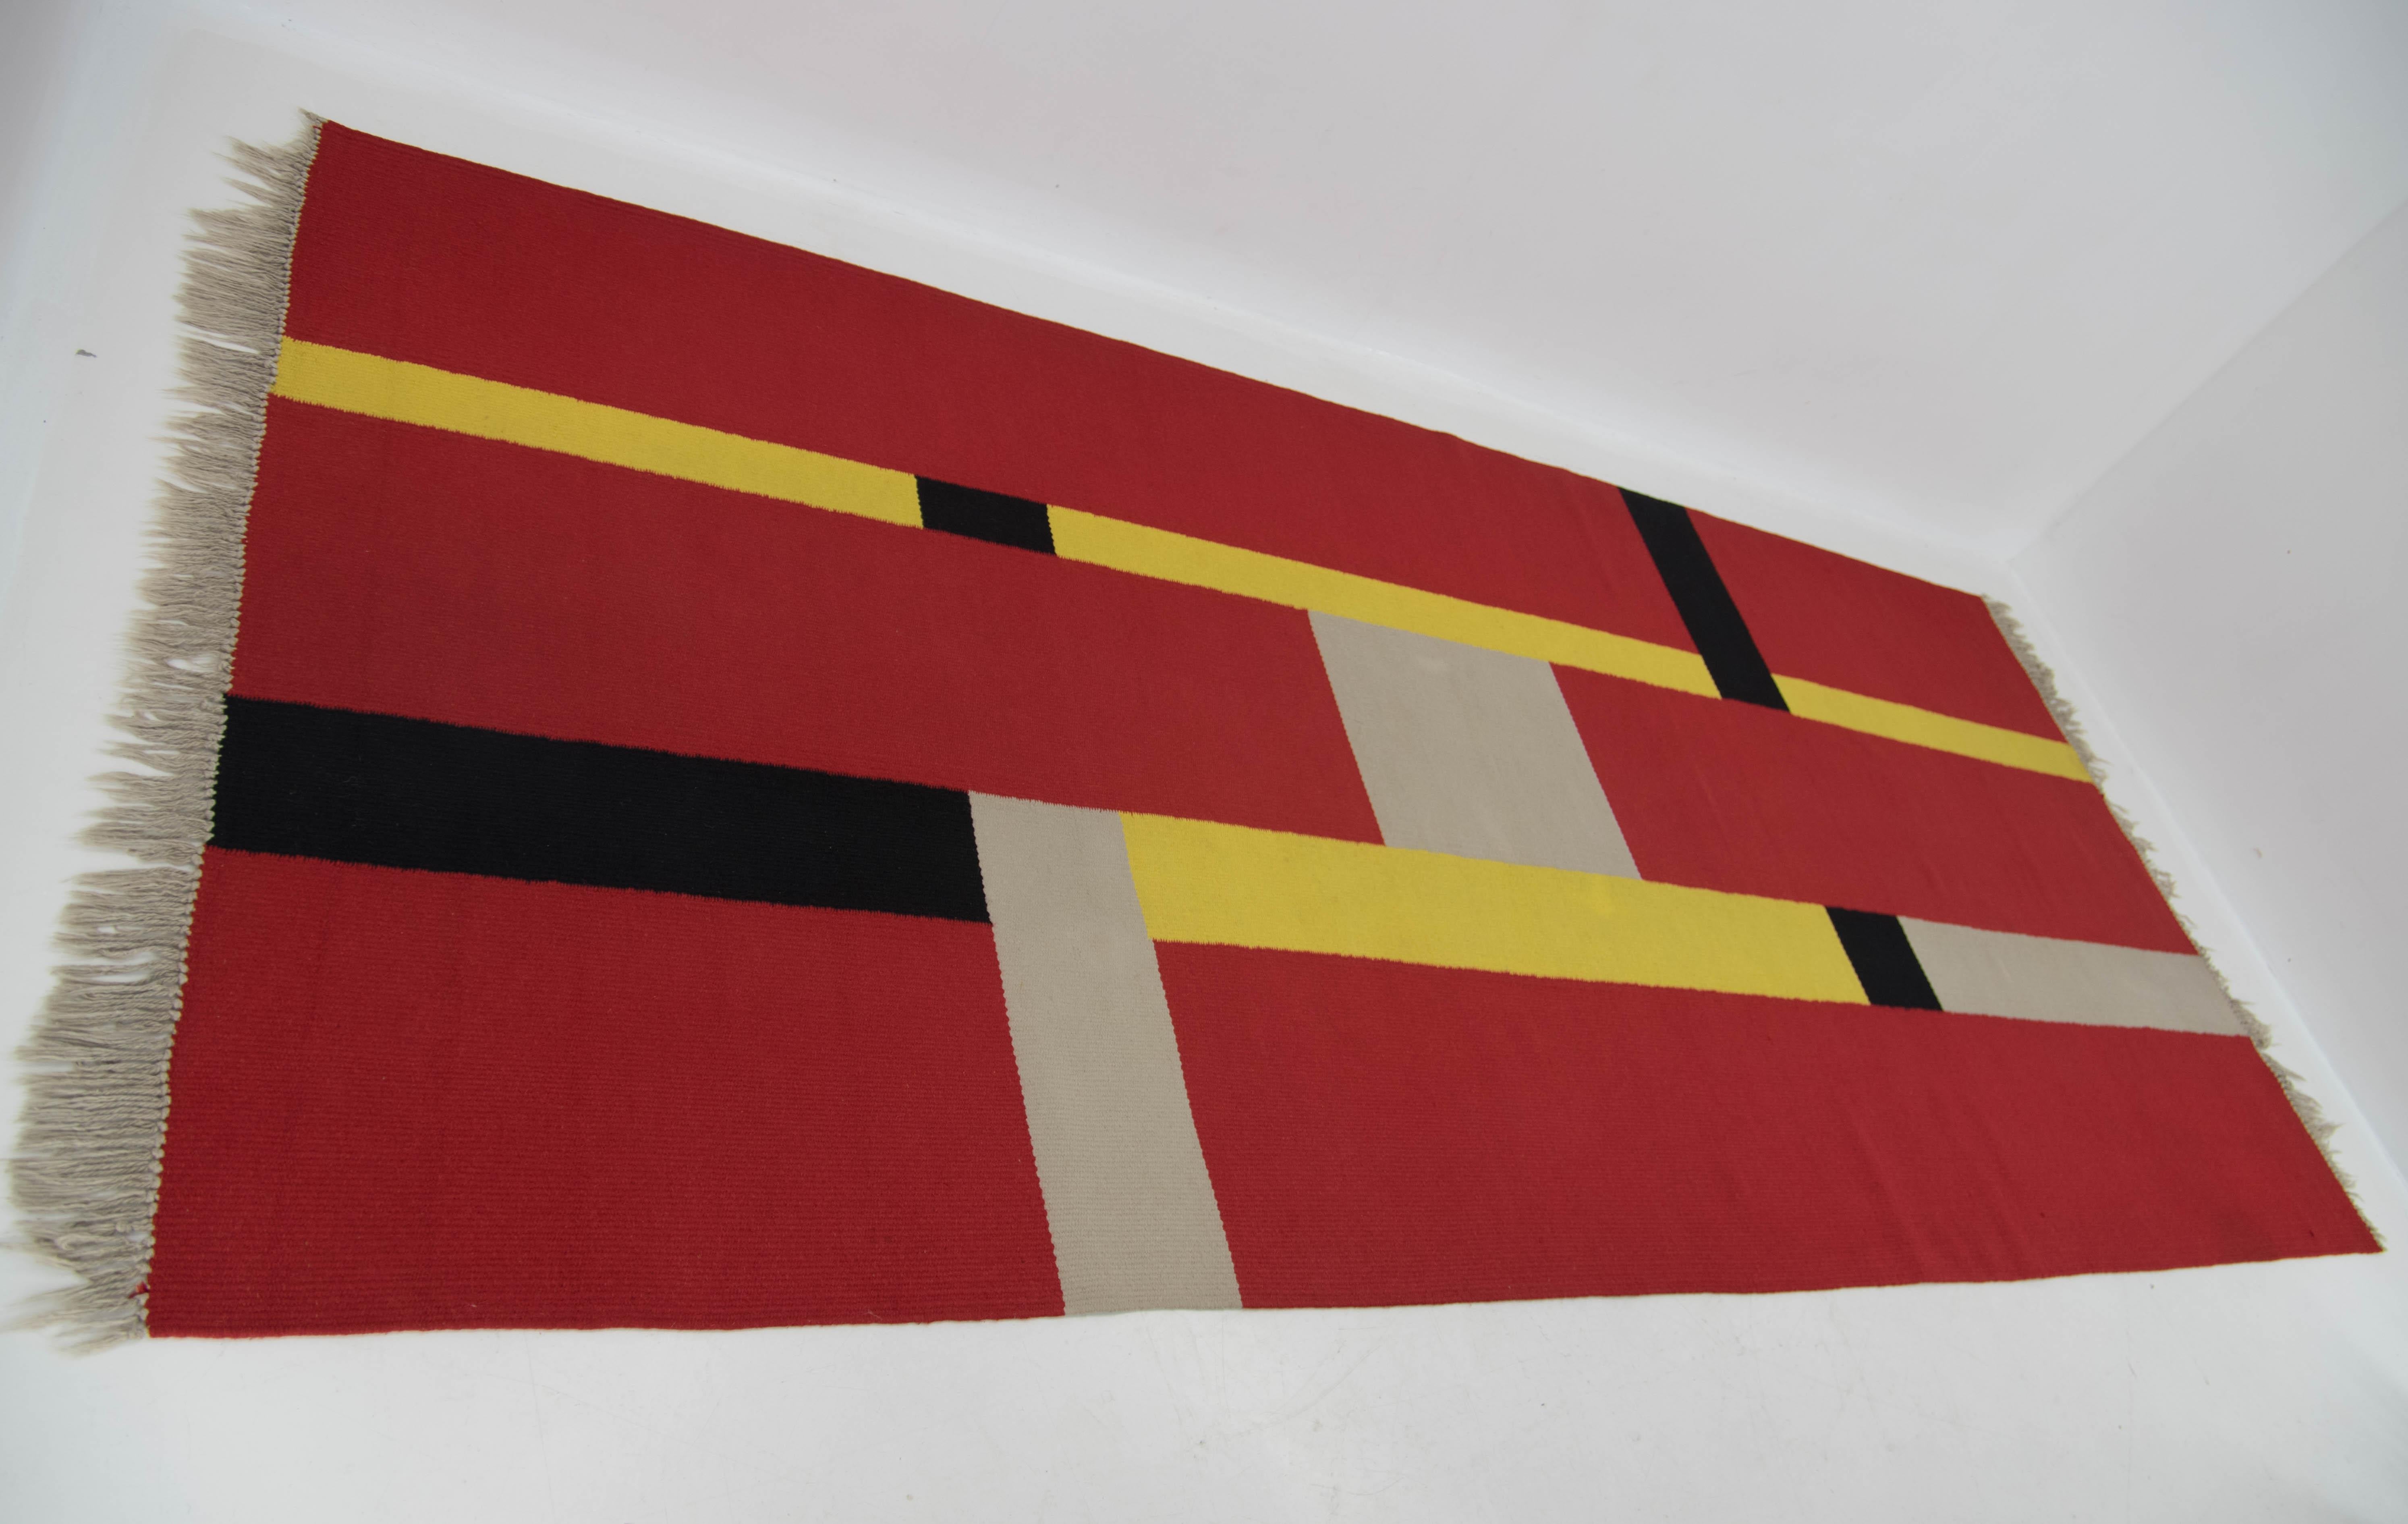 Grand tapis Bauhaus à motif géométrique.
Fabriqué en Tchécoslovaquie dans les années 1940.
Très bon état d'origine.